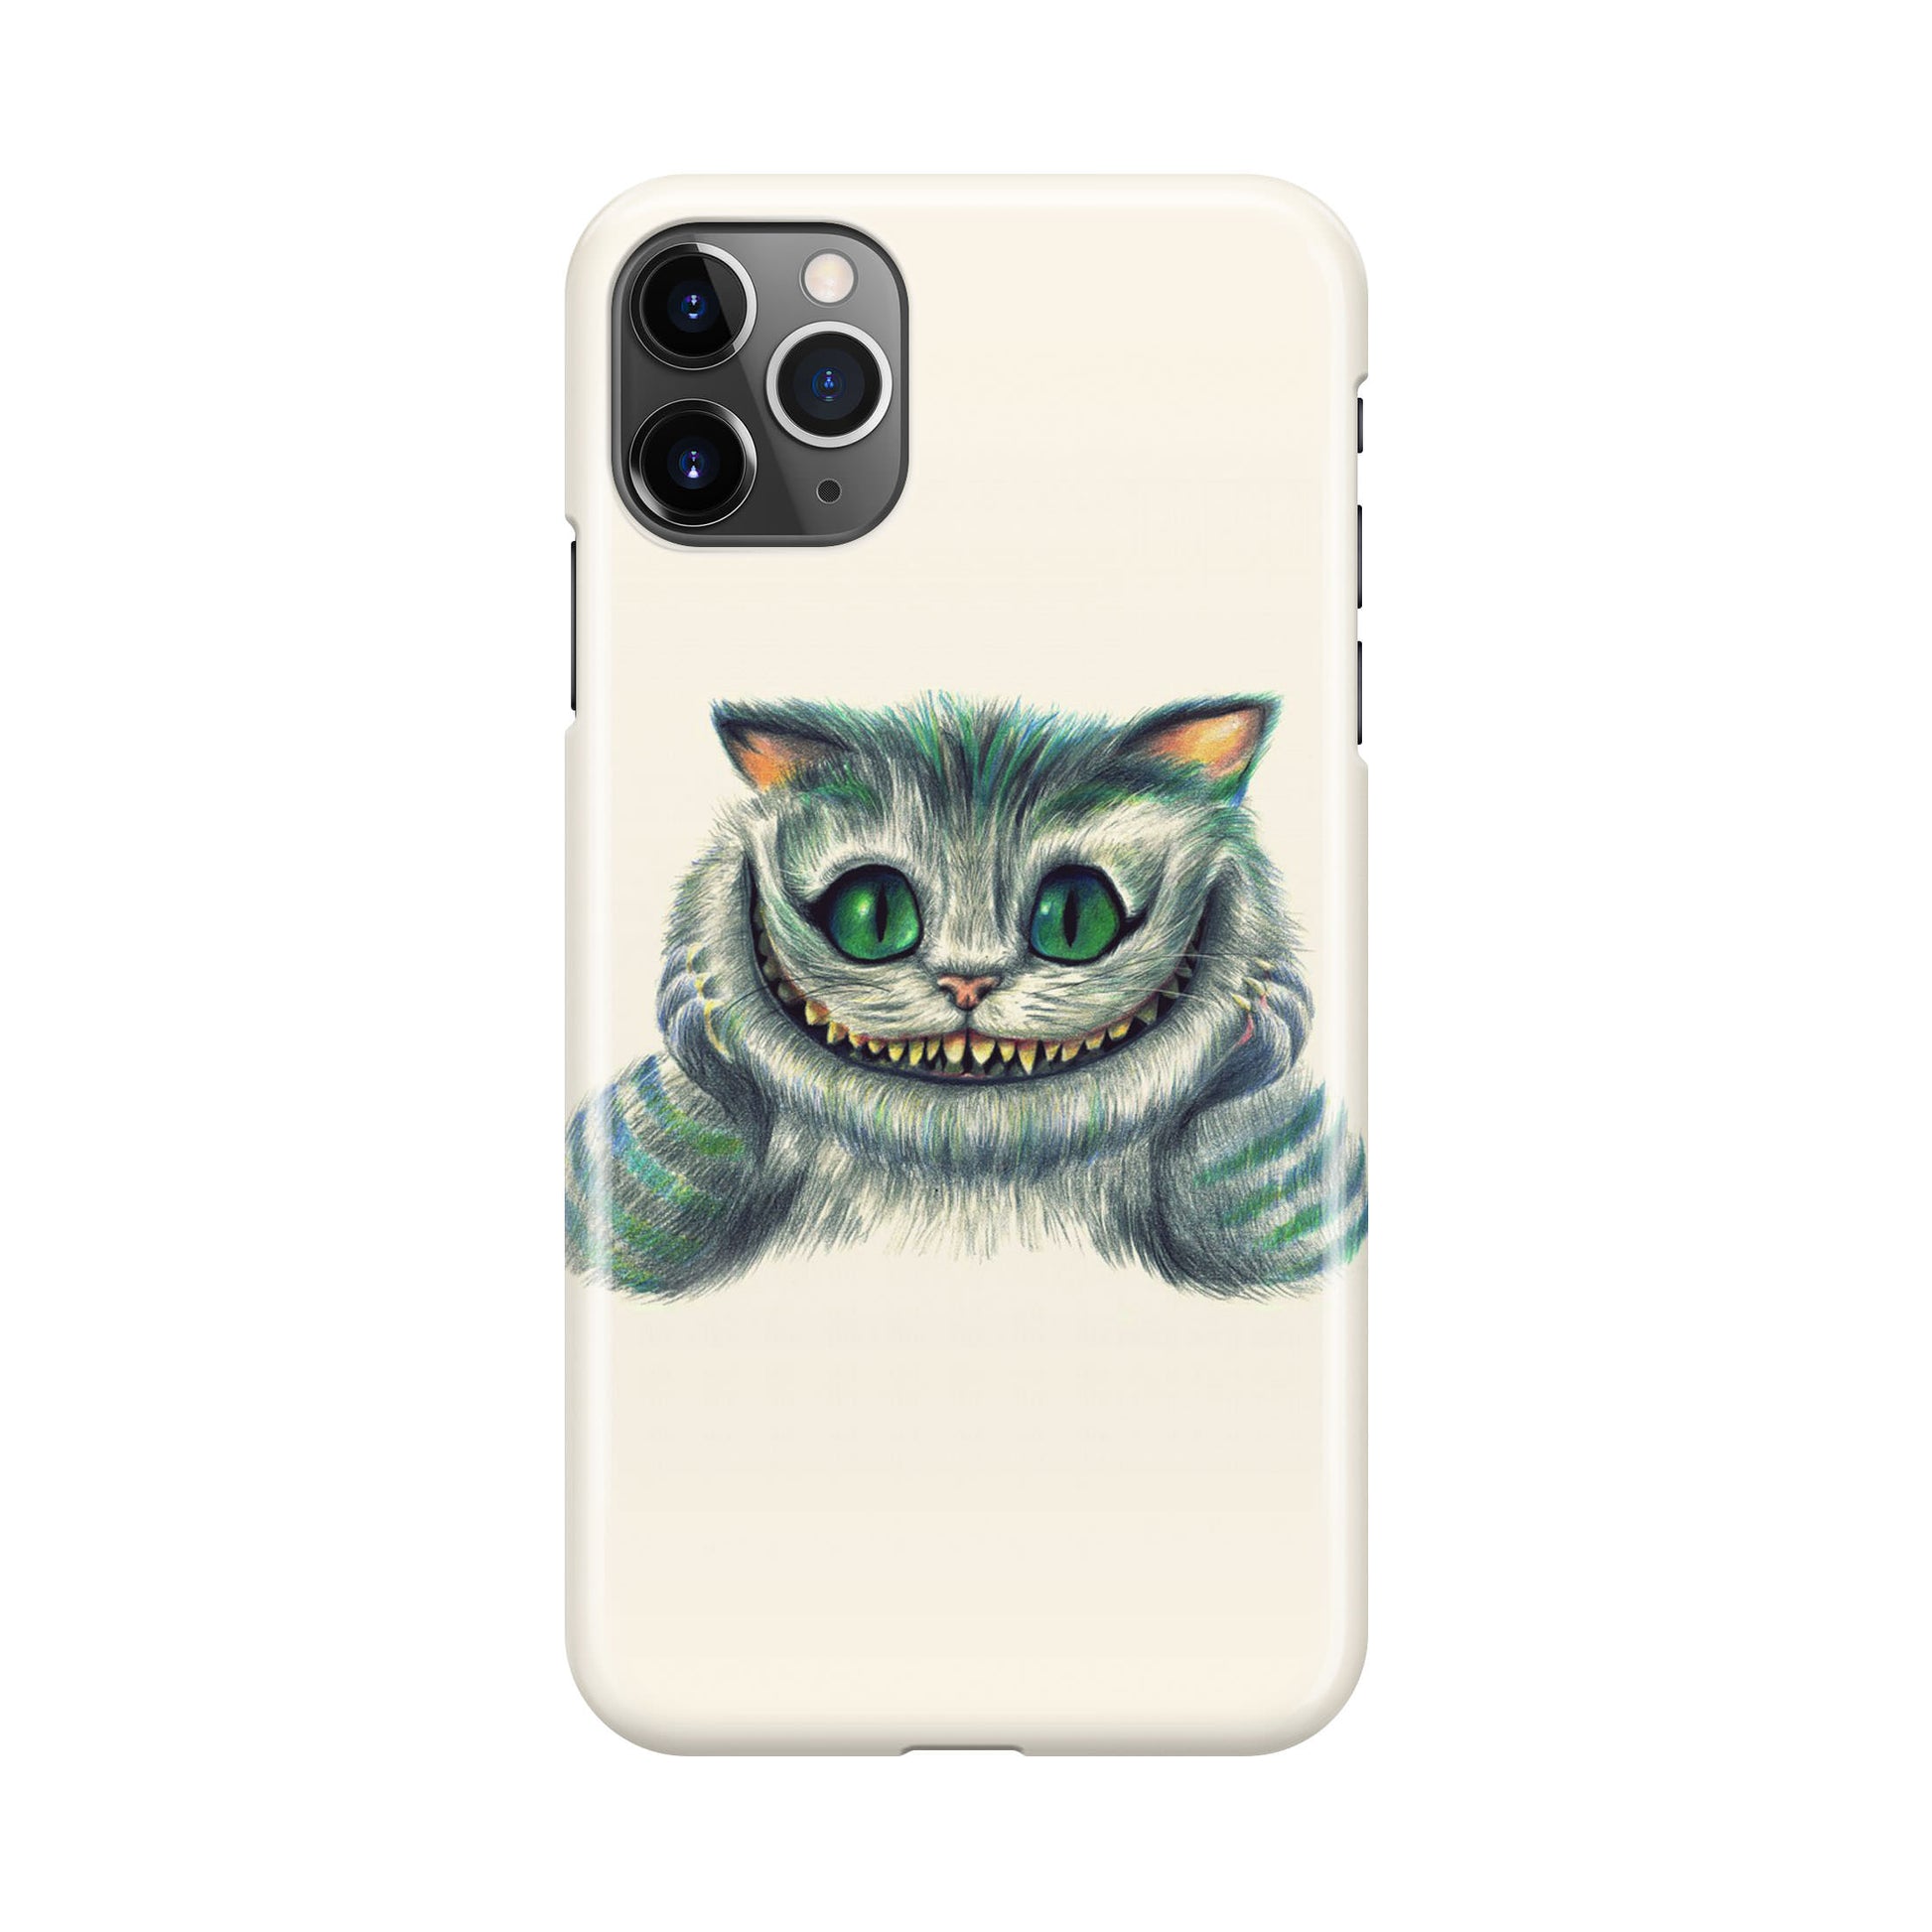 Smile Cat iPhone 11 Pro Max Case